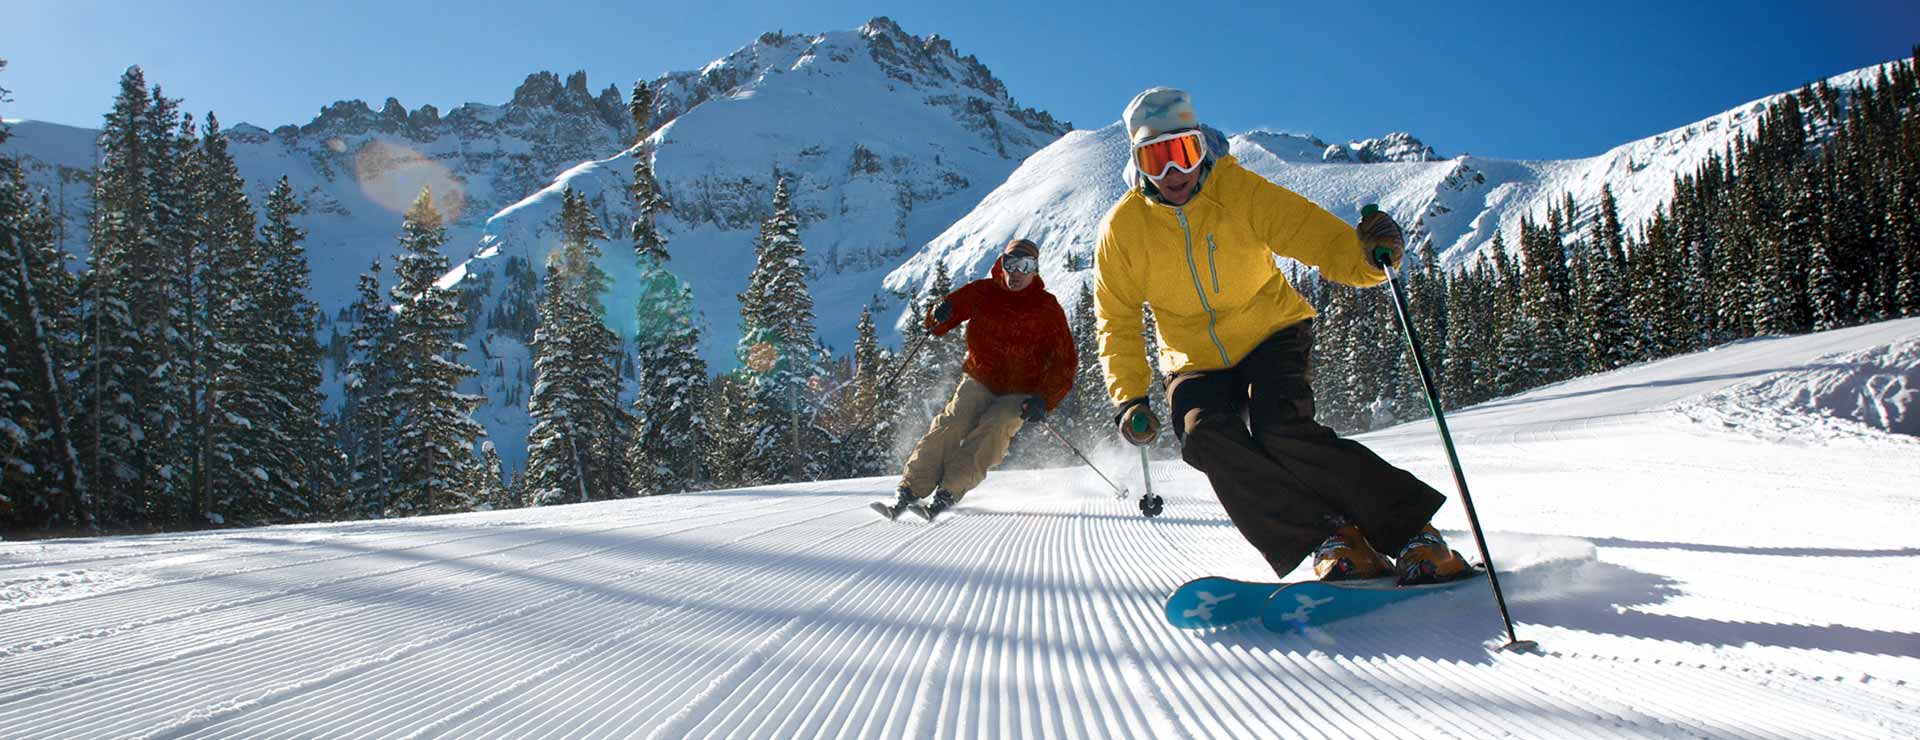 Snow Skier Logo - The Mountain